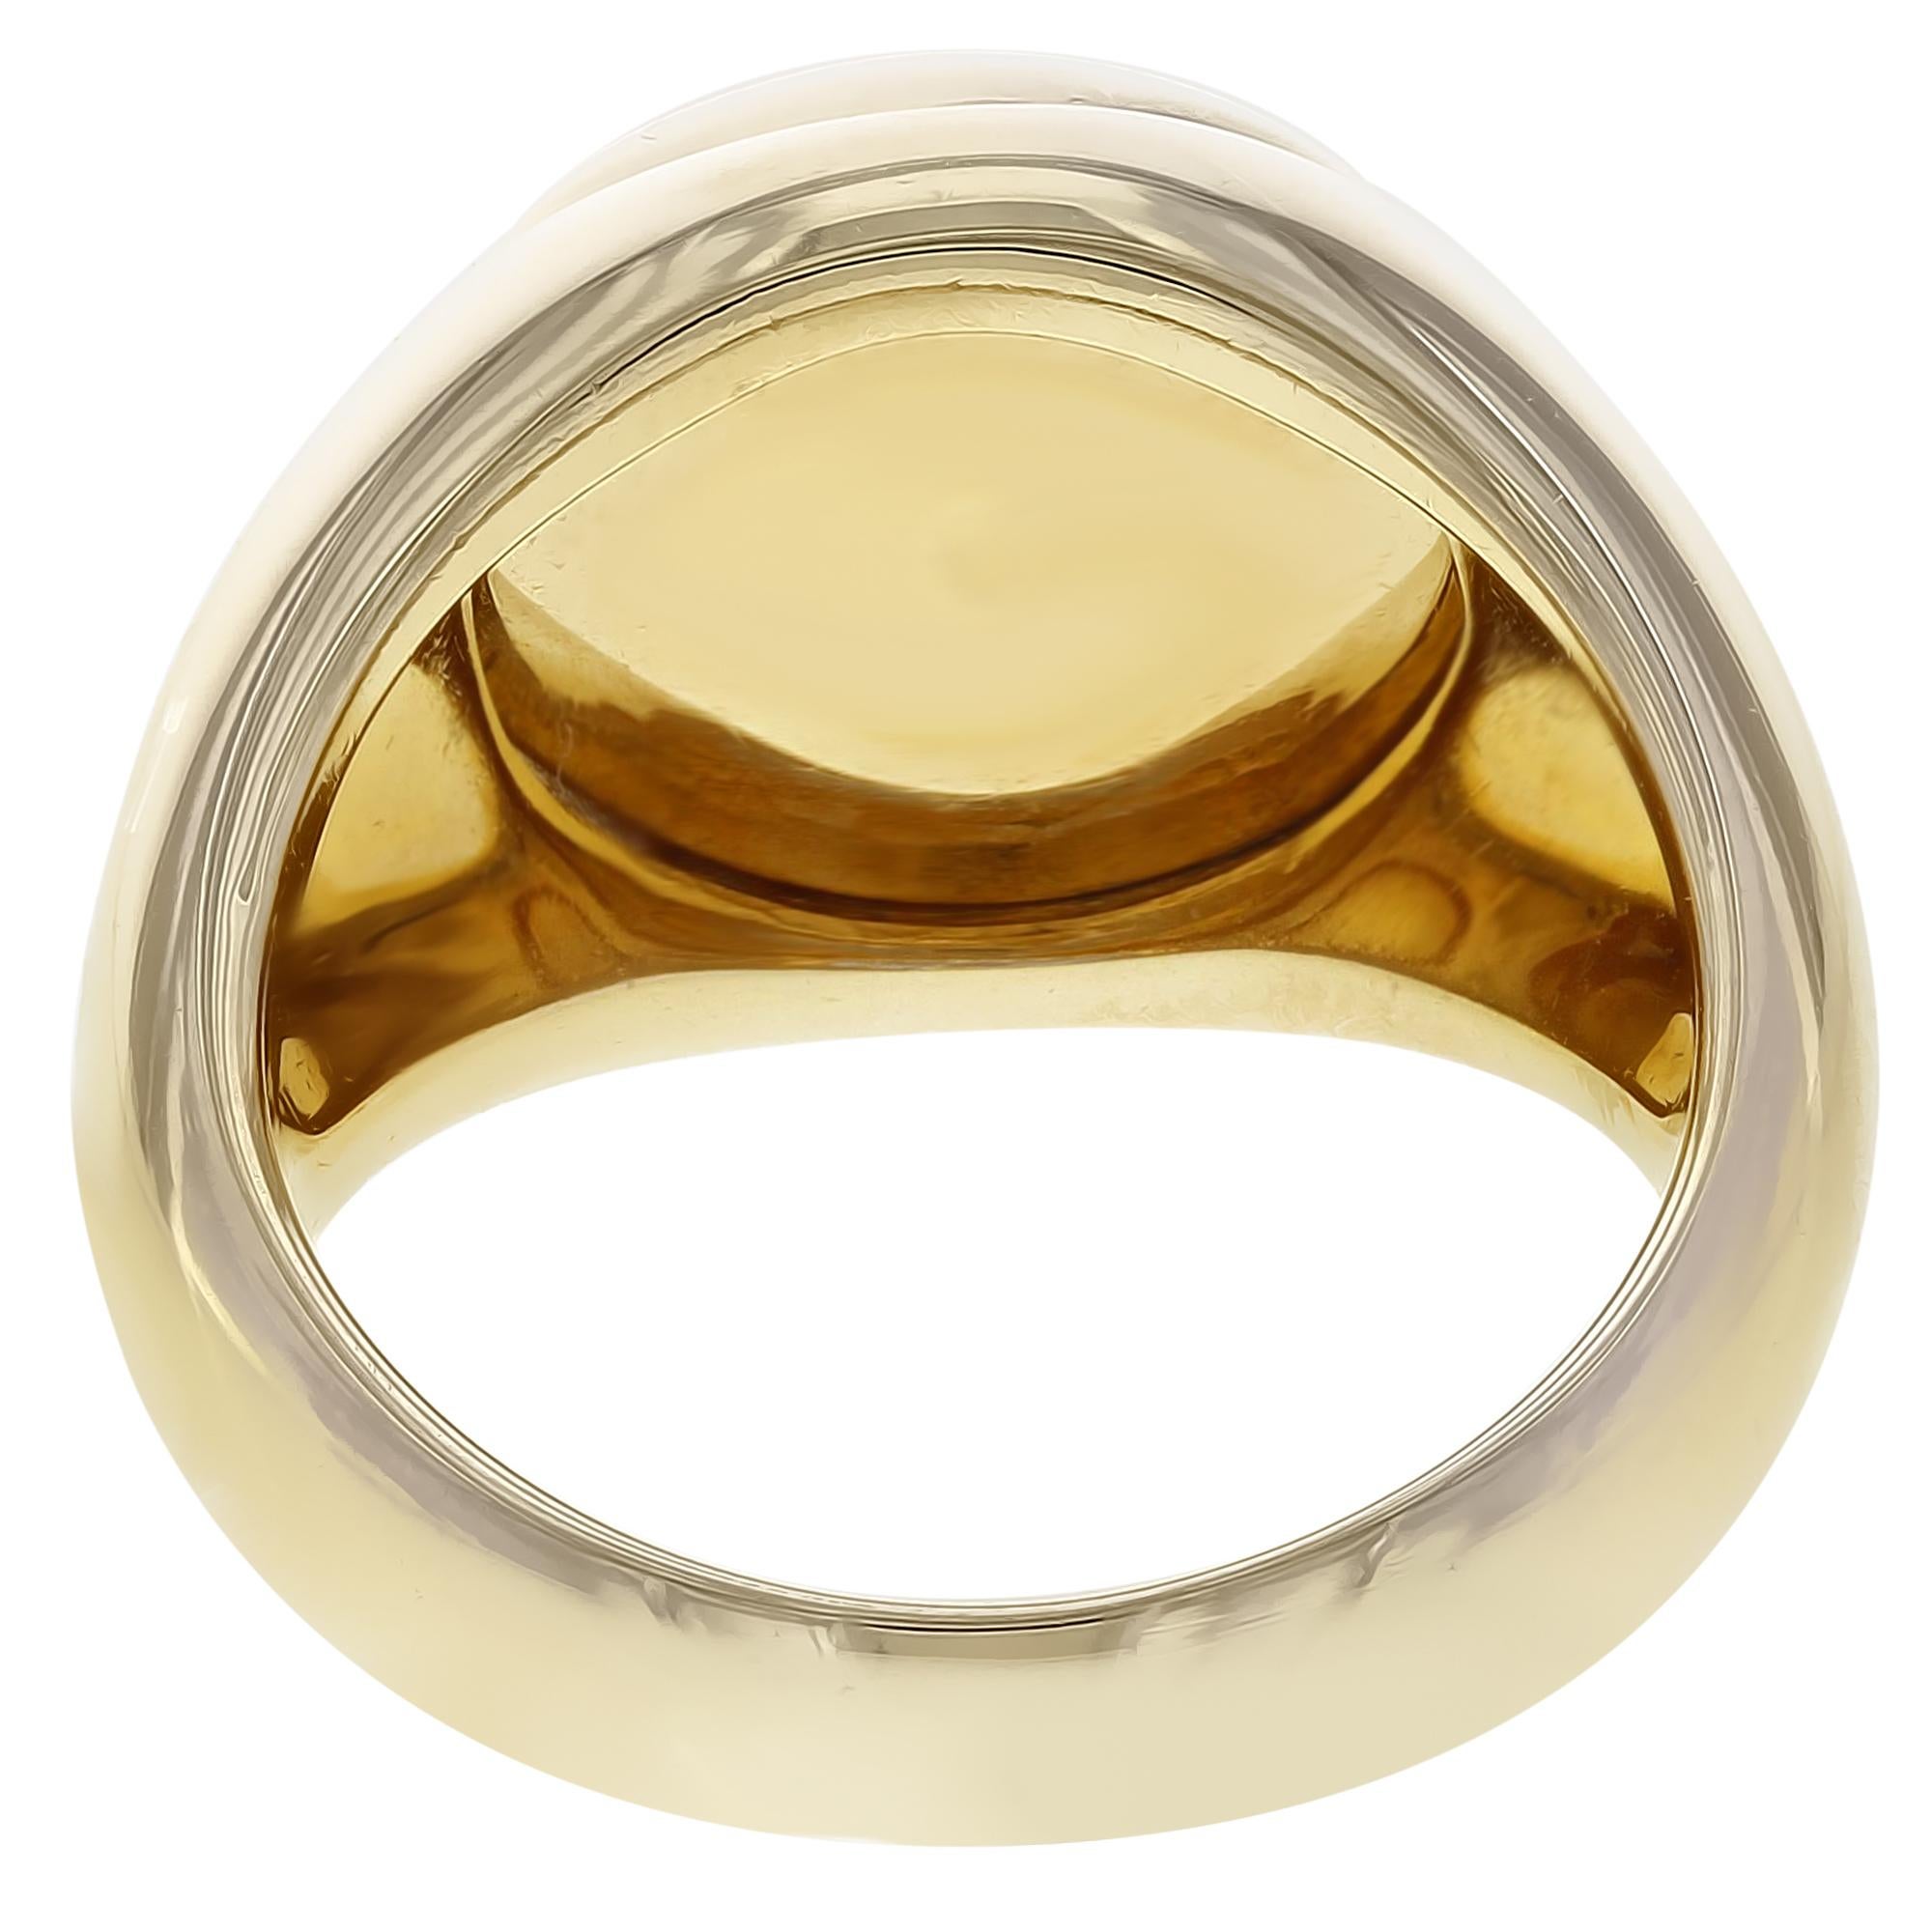 Modern Bvlgari Signet 18 Karat Yellow Gold Black Onyx Ring 17.6 g